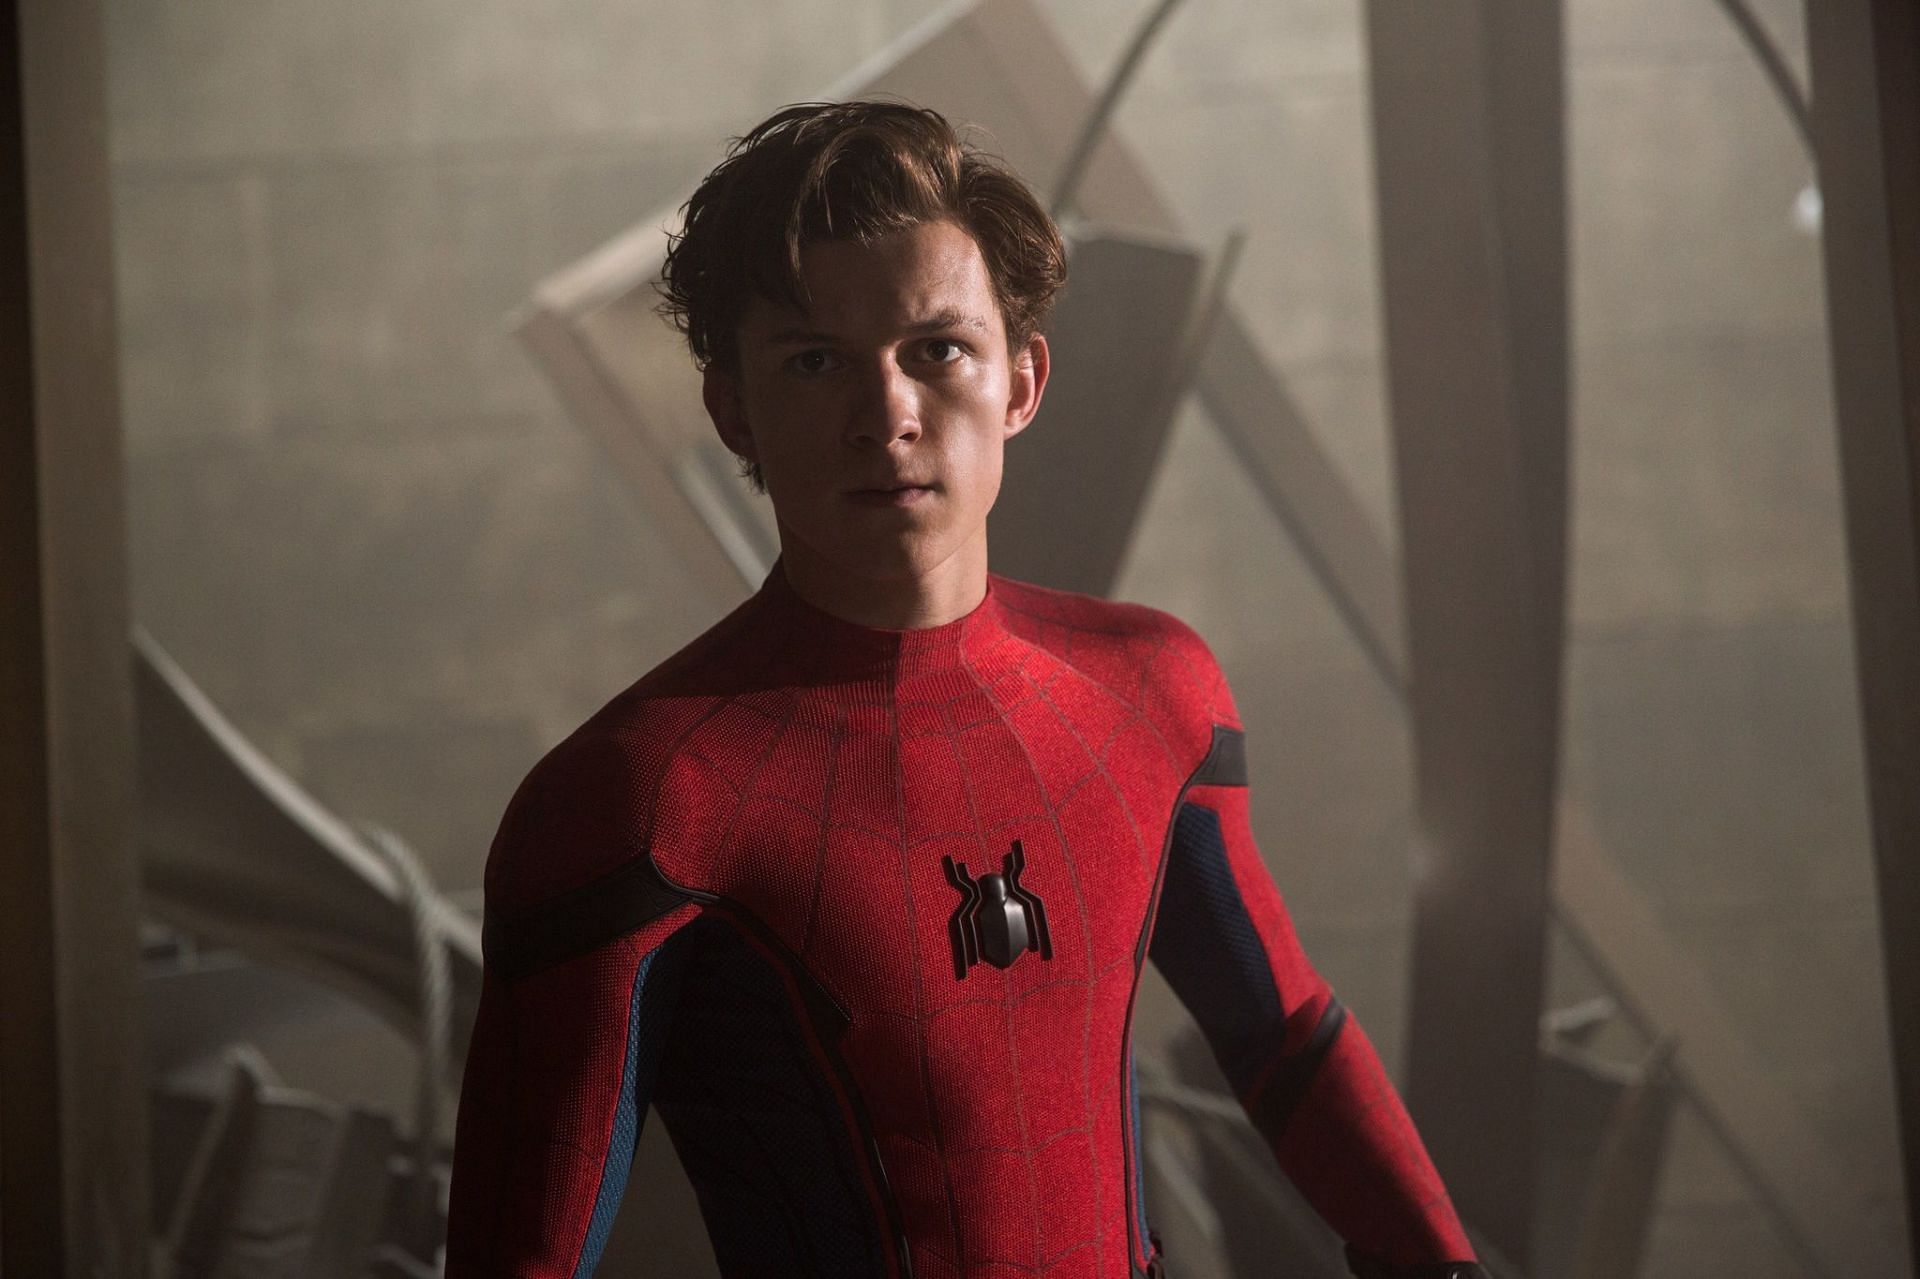 Spider-Man™: Far From Home - Disney+ Hotstar